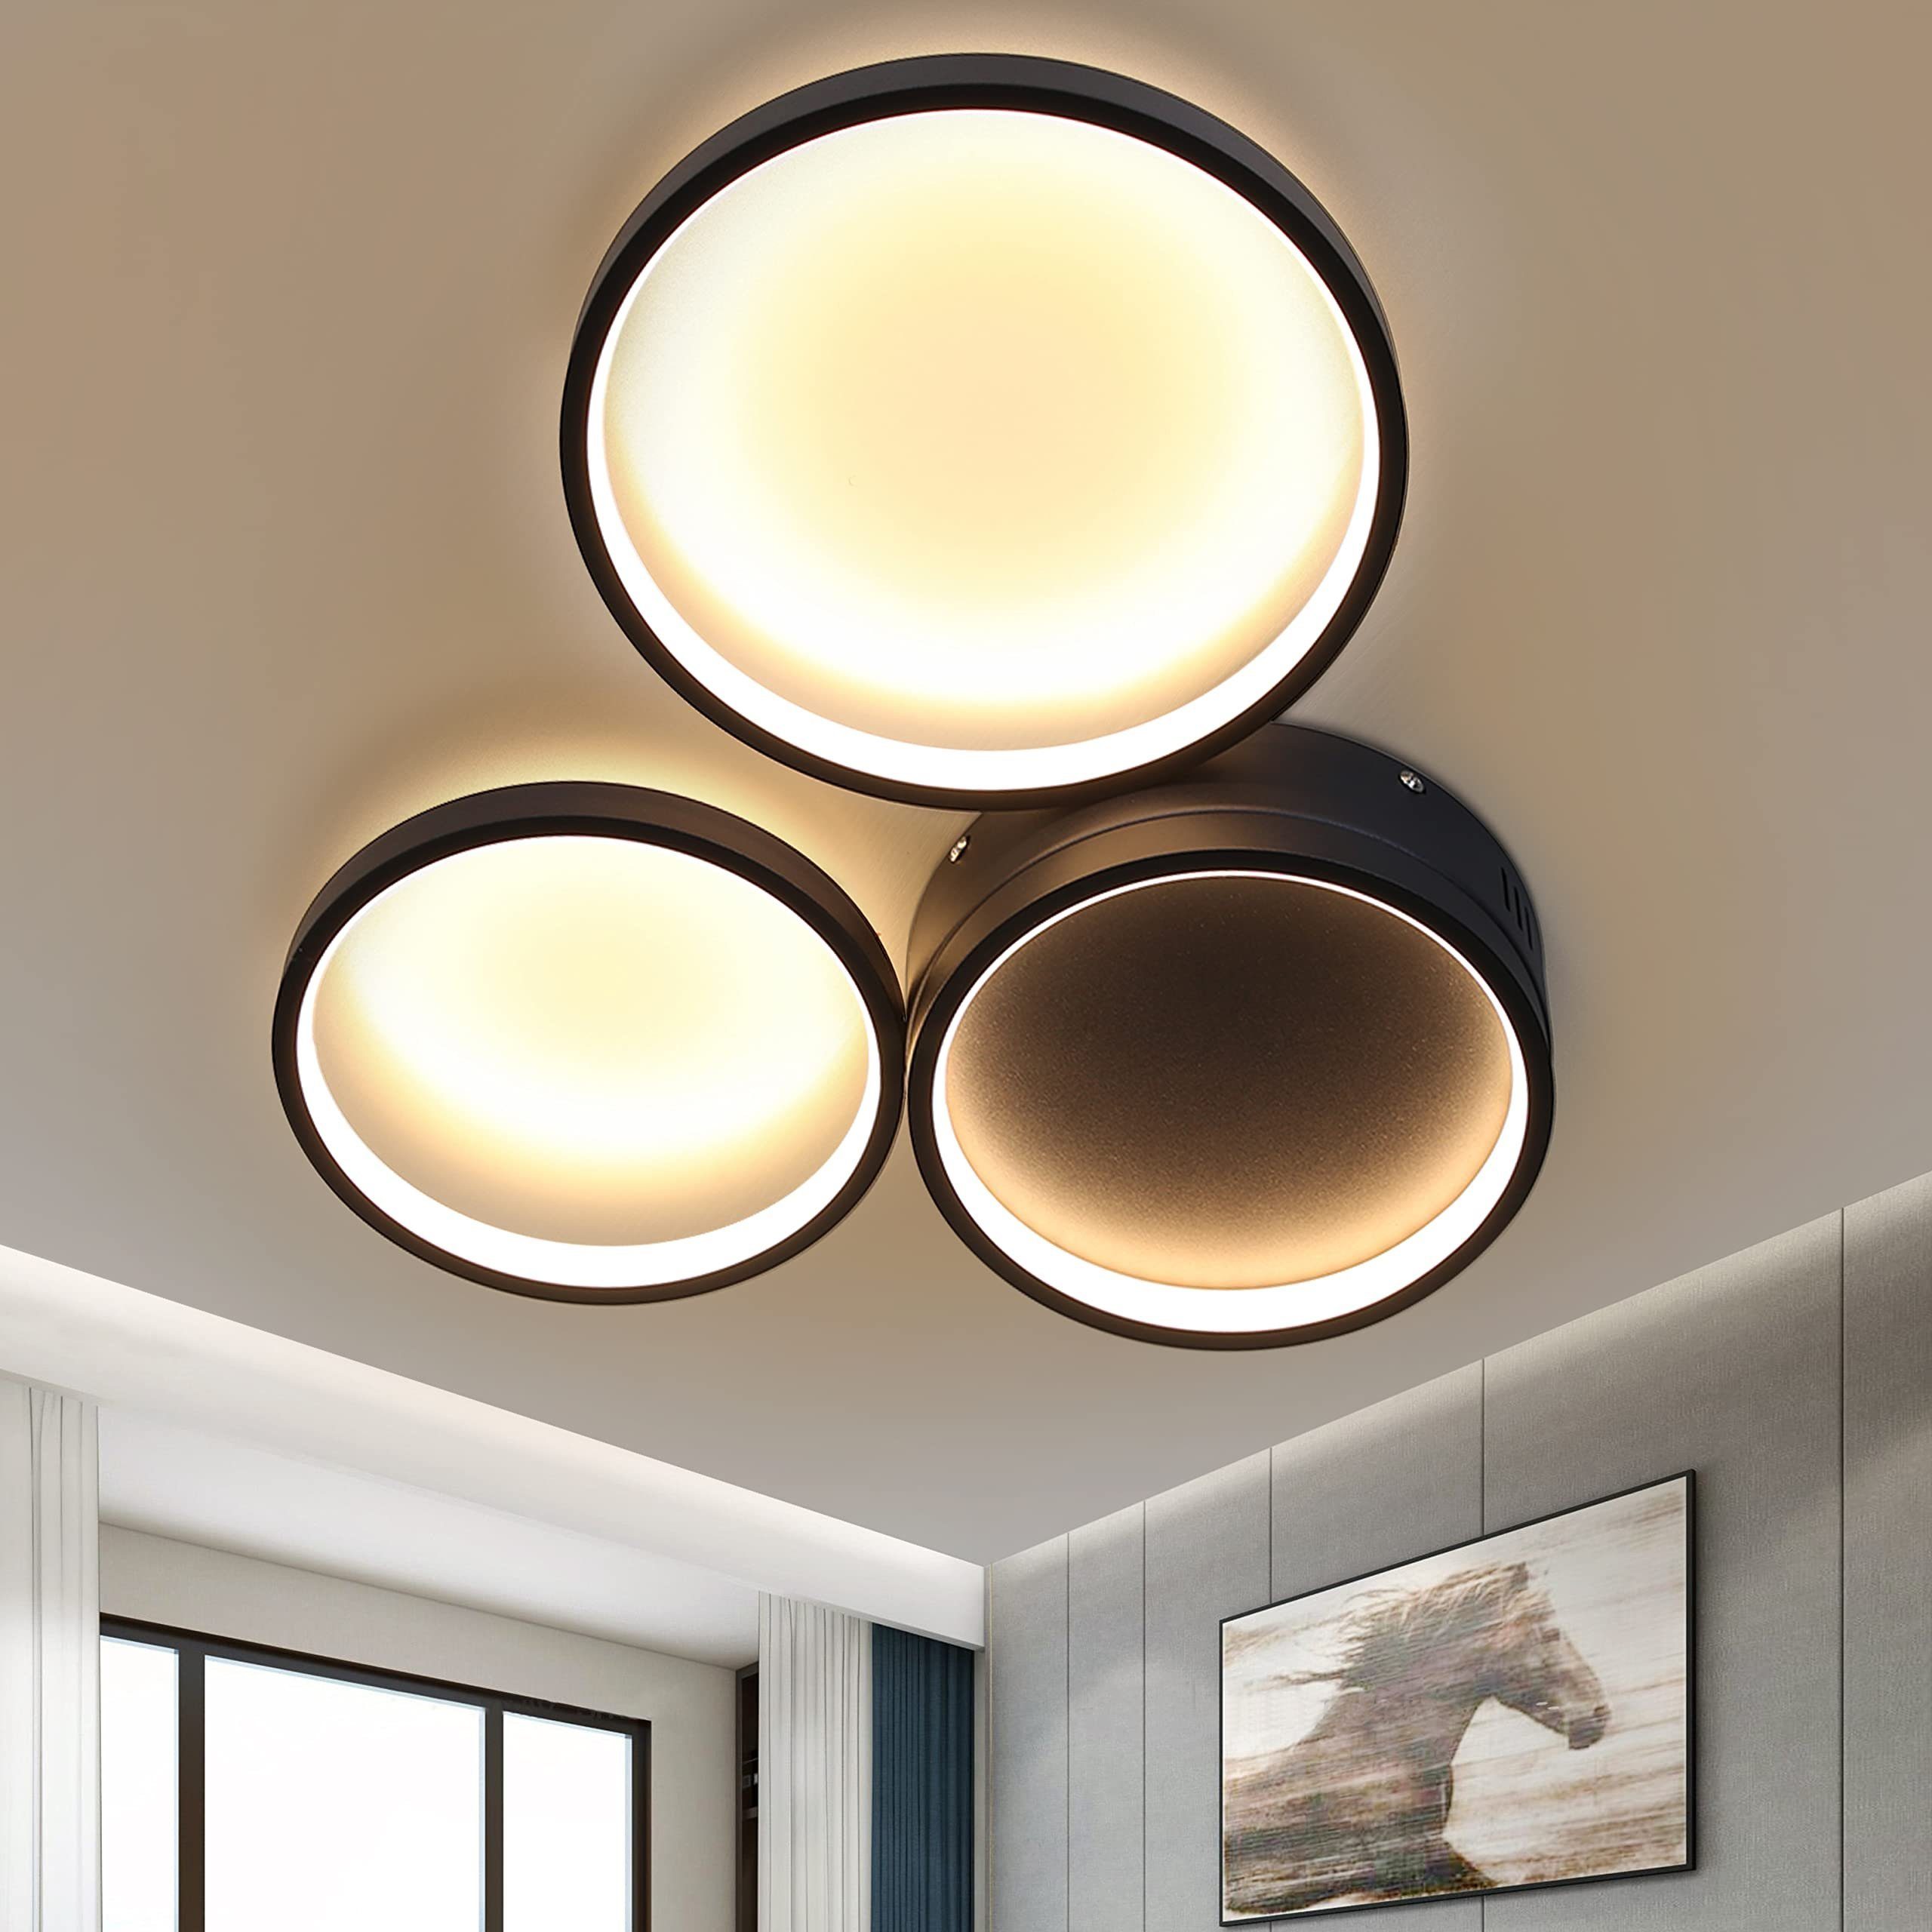 LED Decken Lampe Wohn-Zimmer DESIGNER Beleuchtung Flur Bad Küchen Decken-Leuchte 